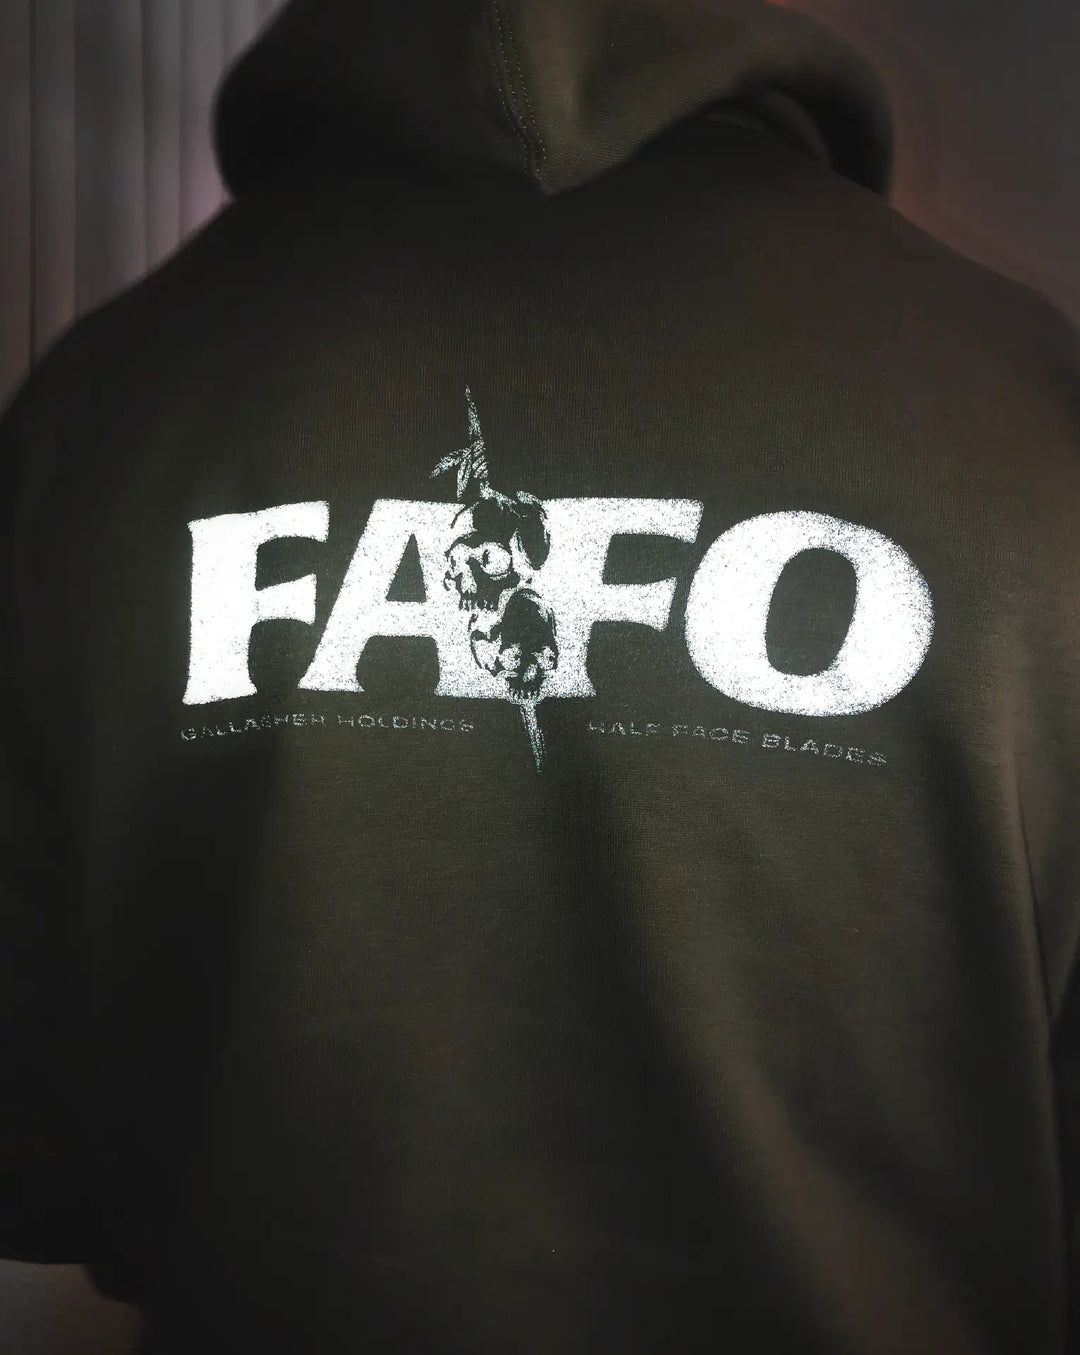 FAFO x HFB Hoodie - Giveaway Eligible